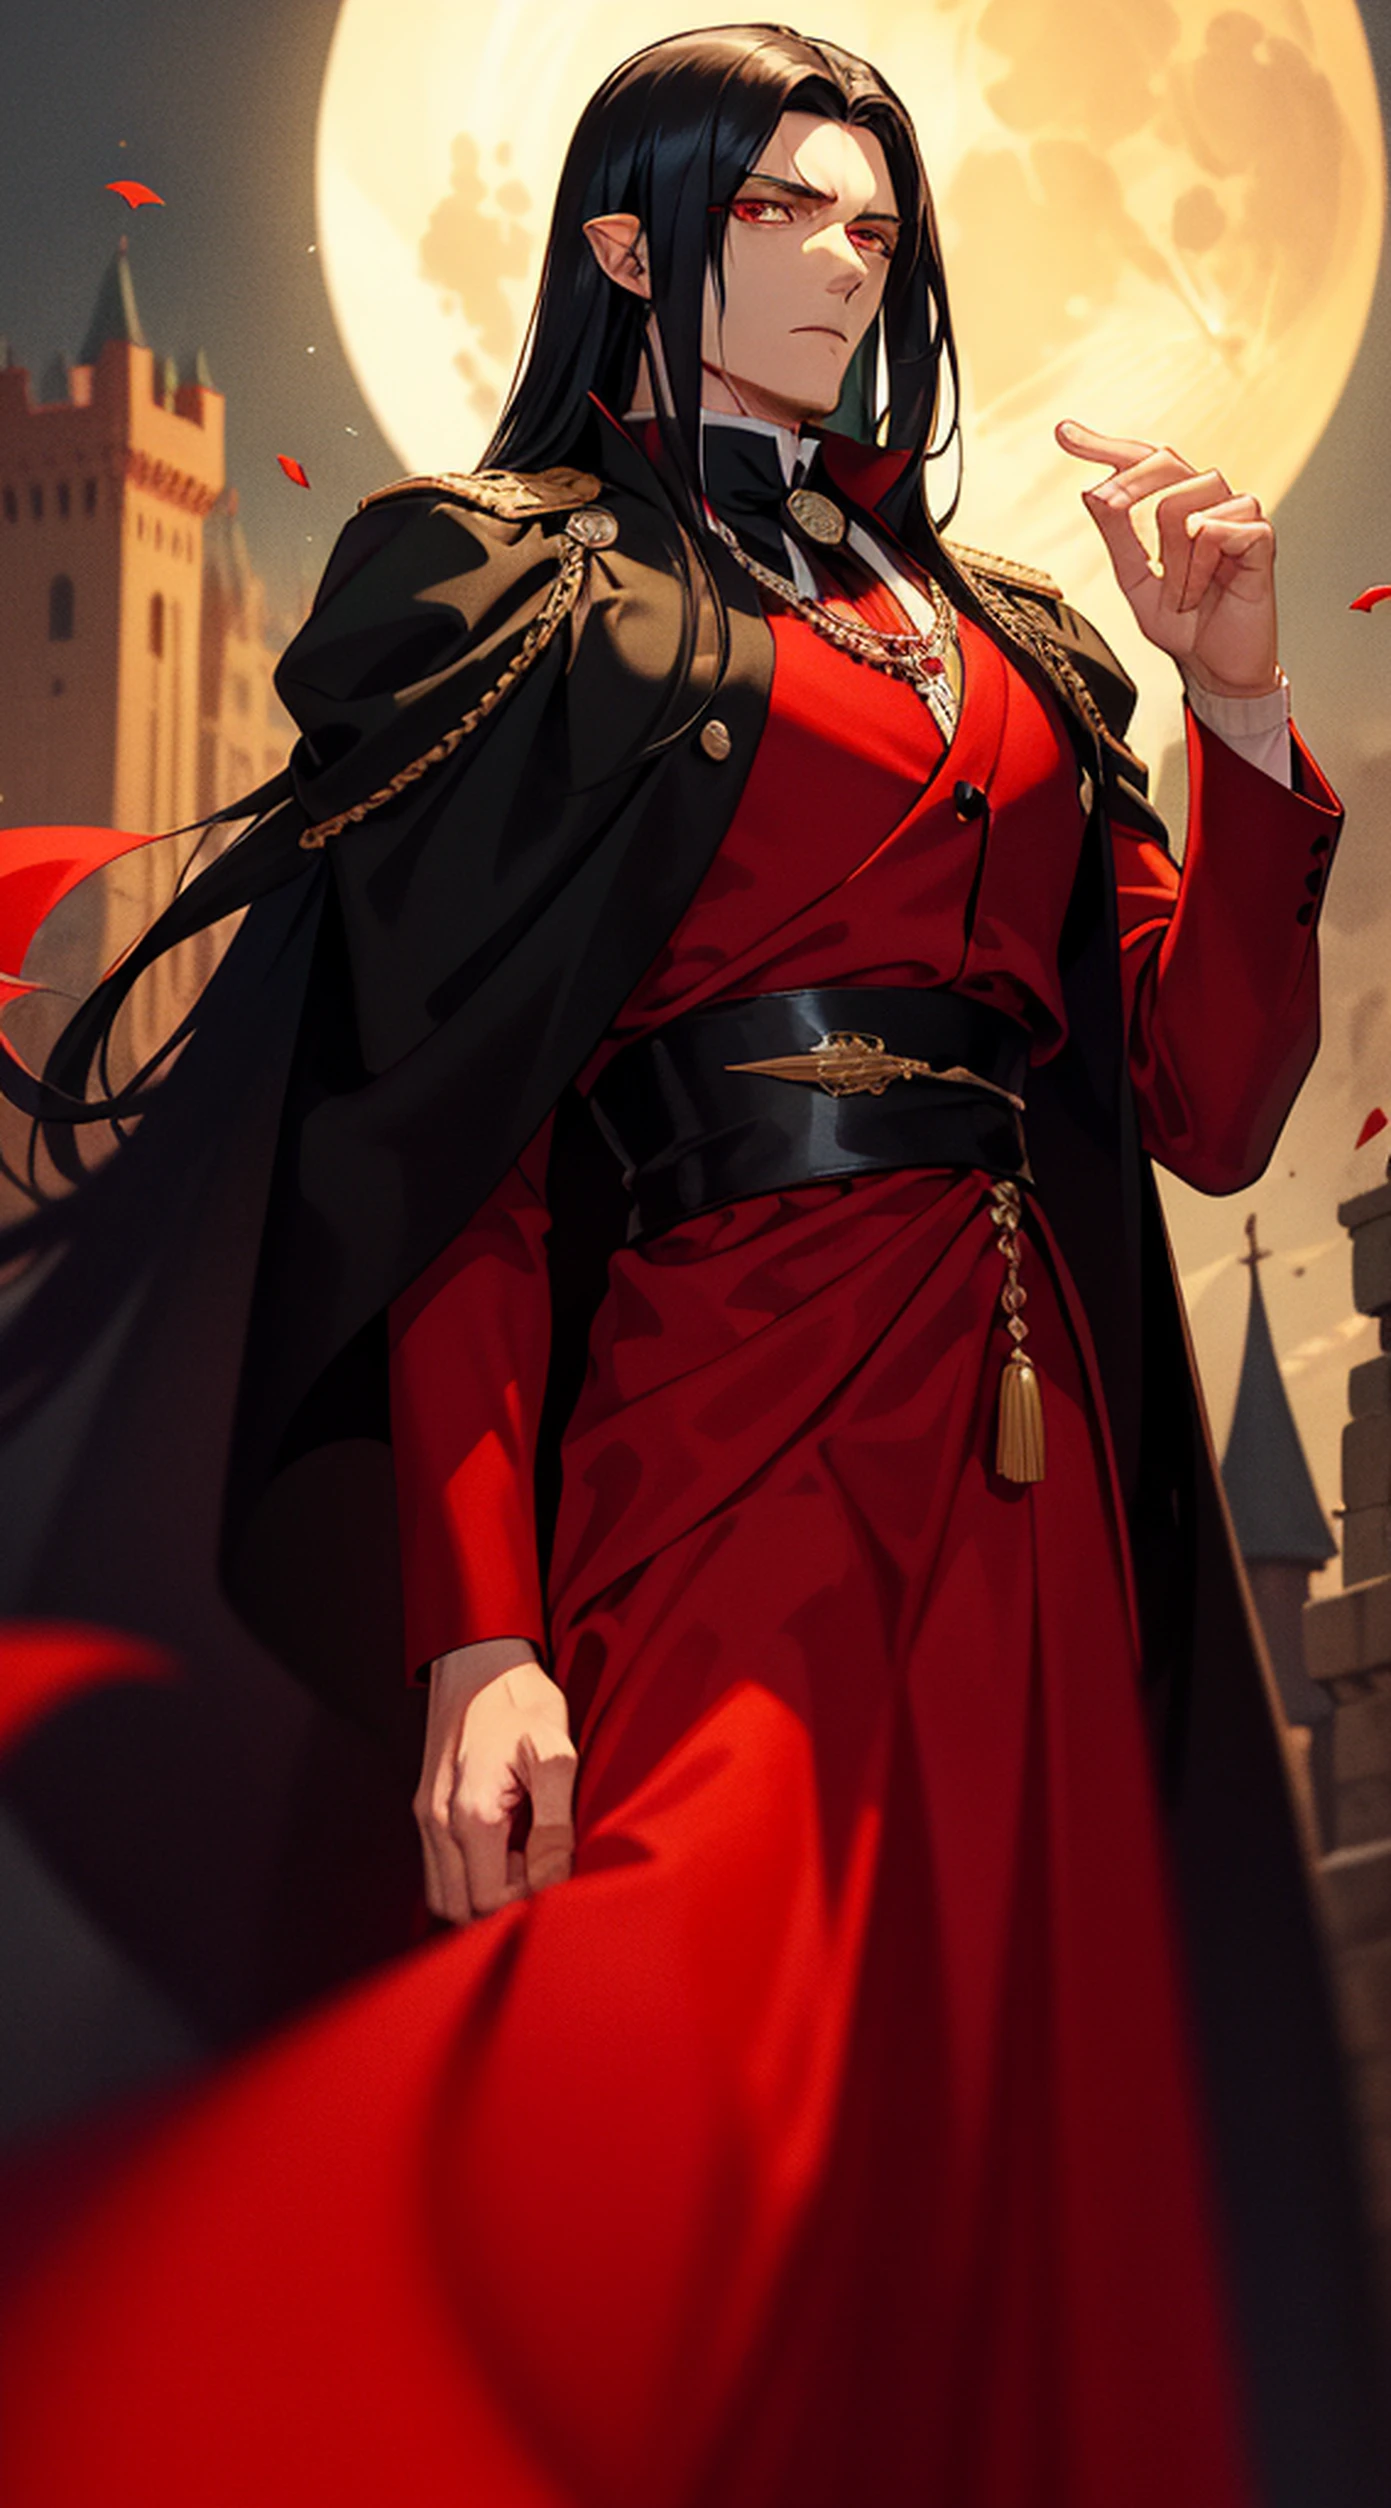 一個英俊的男人, 有著黑色長髮和紅色眼睛的吸血鬼國王, 他穿著棕色長袍和帶有紅色的黑色衣服. (塞納留斯在皇家城堡的血腥月夜)